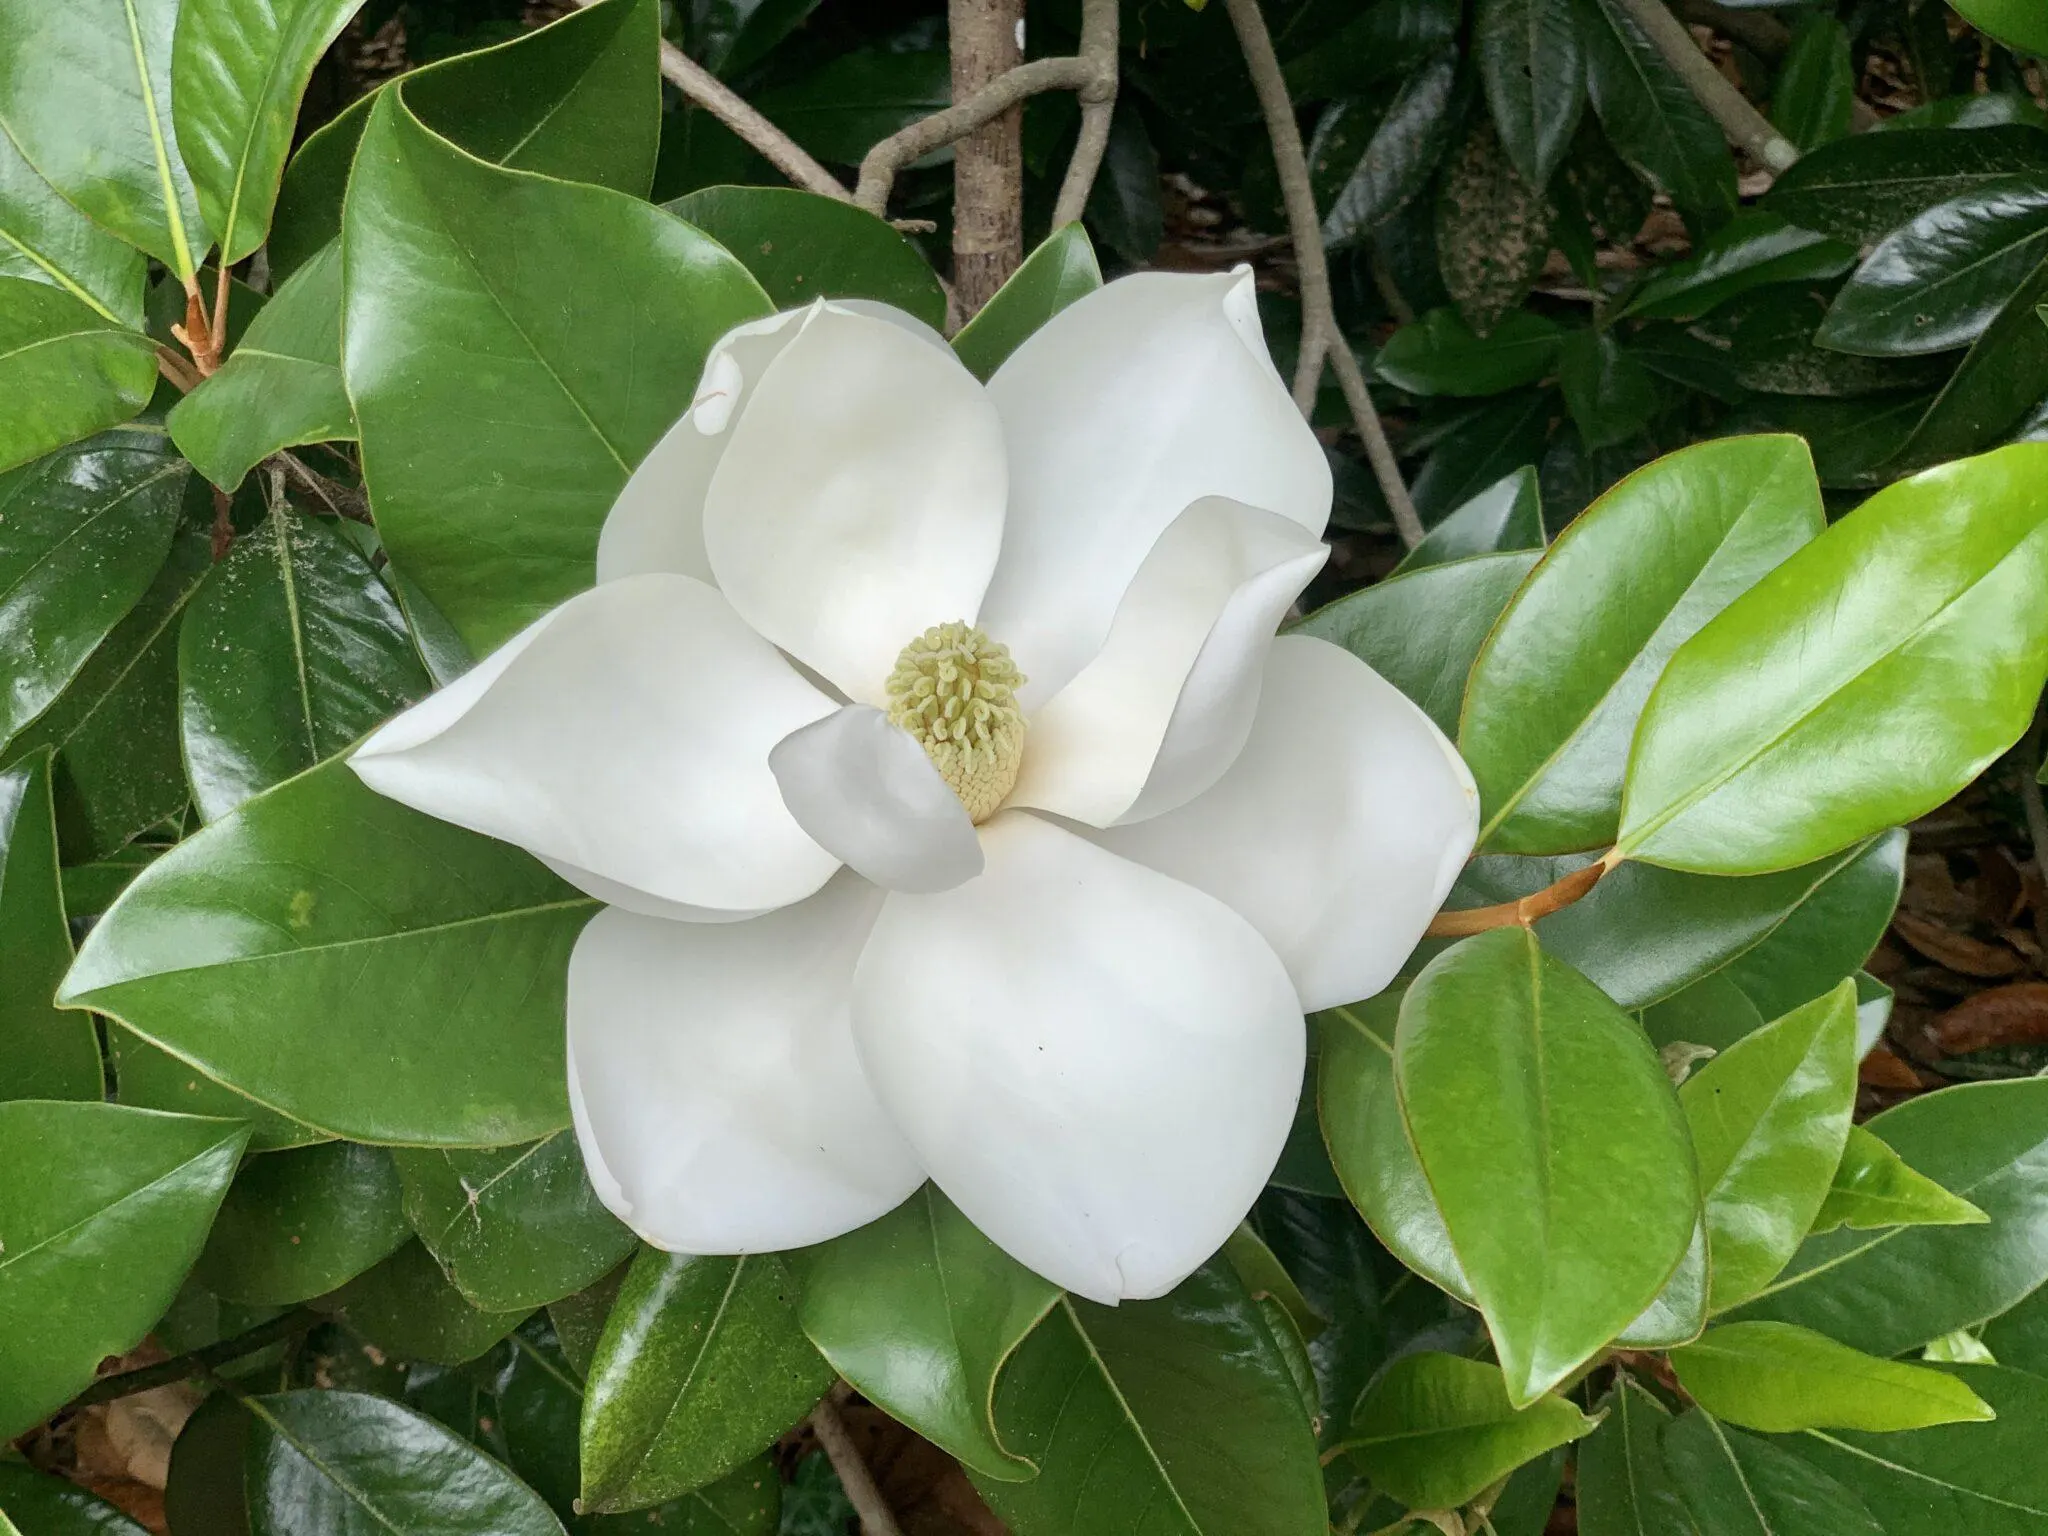 White magnolia flower in garden